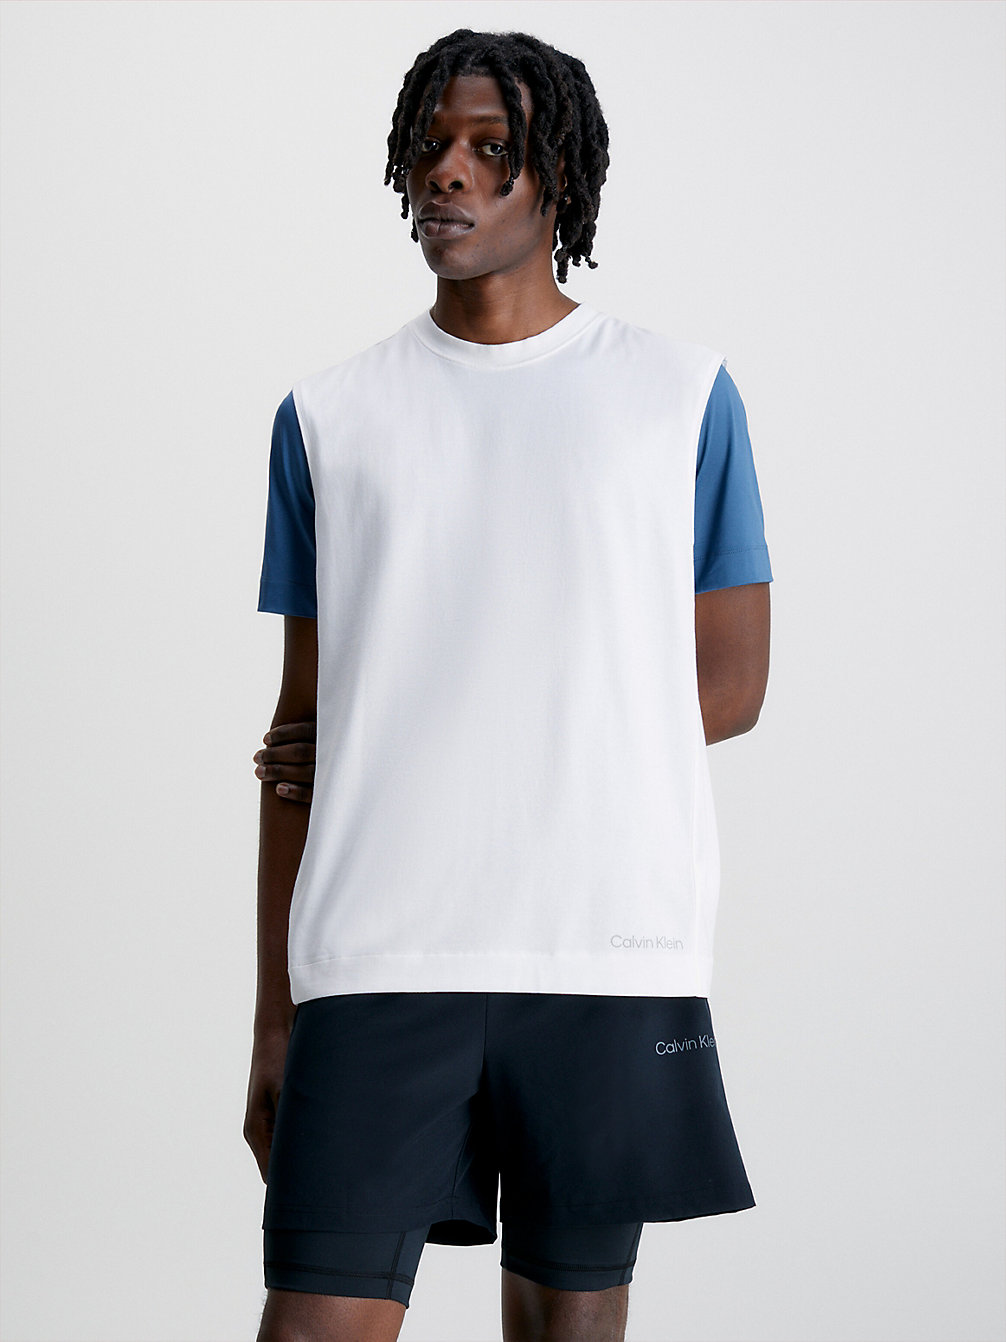 BRIGHT WHITE > Koszulka Bez Rękawów > undefined Mężczyźni - Calvin Klein